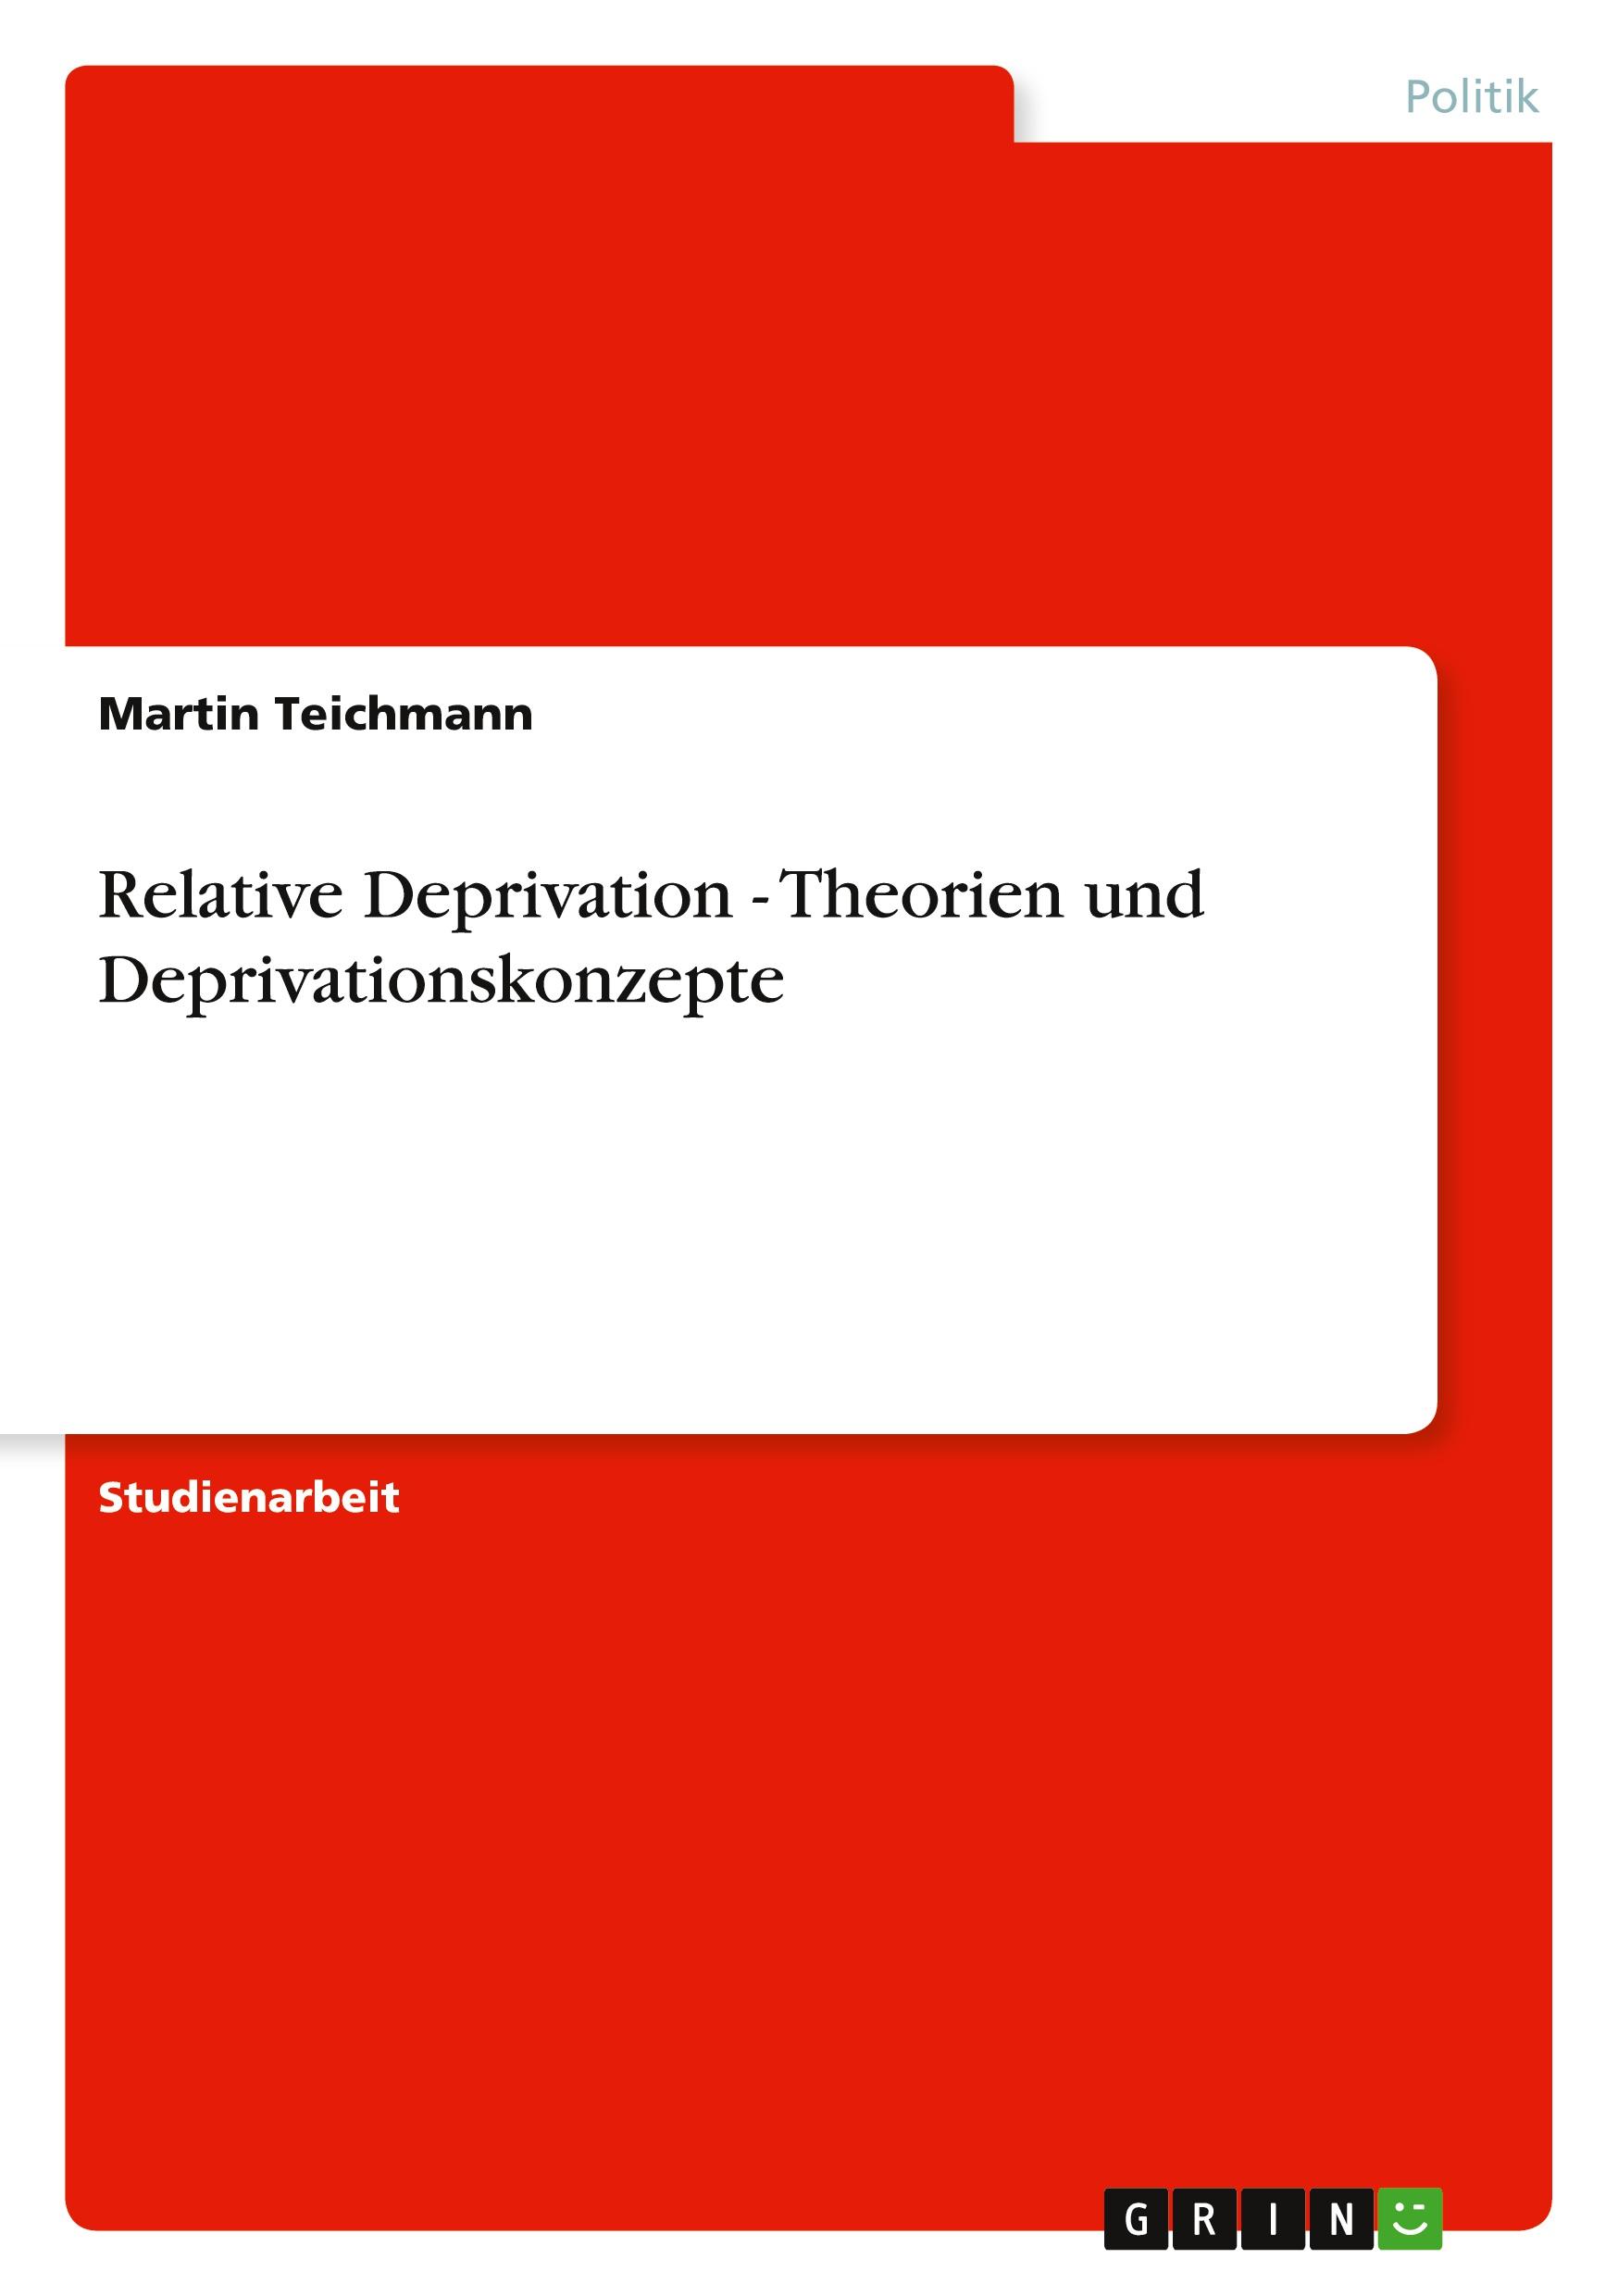 Relative Deprivation - Theorien und Deprivationskonzepte / Martin Teichmann / Taschenbuch / Paperback / 28 S. / Deutsch / 2010 / GRIN Verlag / EAN 9783640768134 - Teichmann, Martin